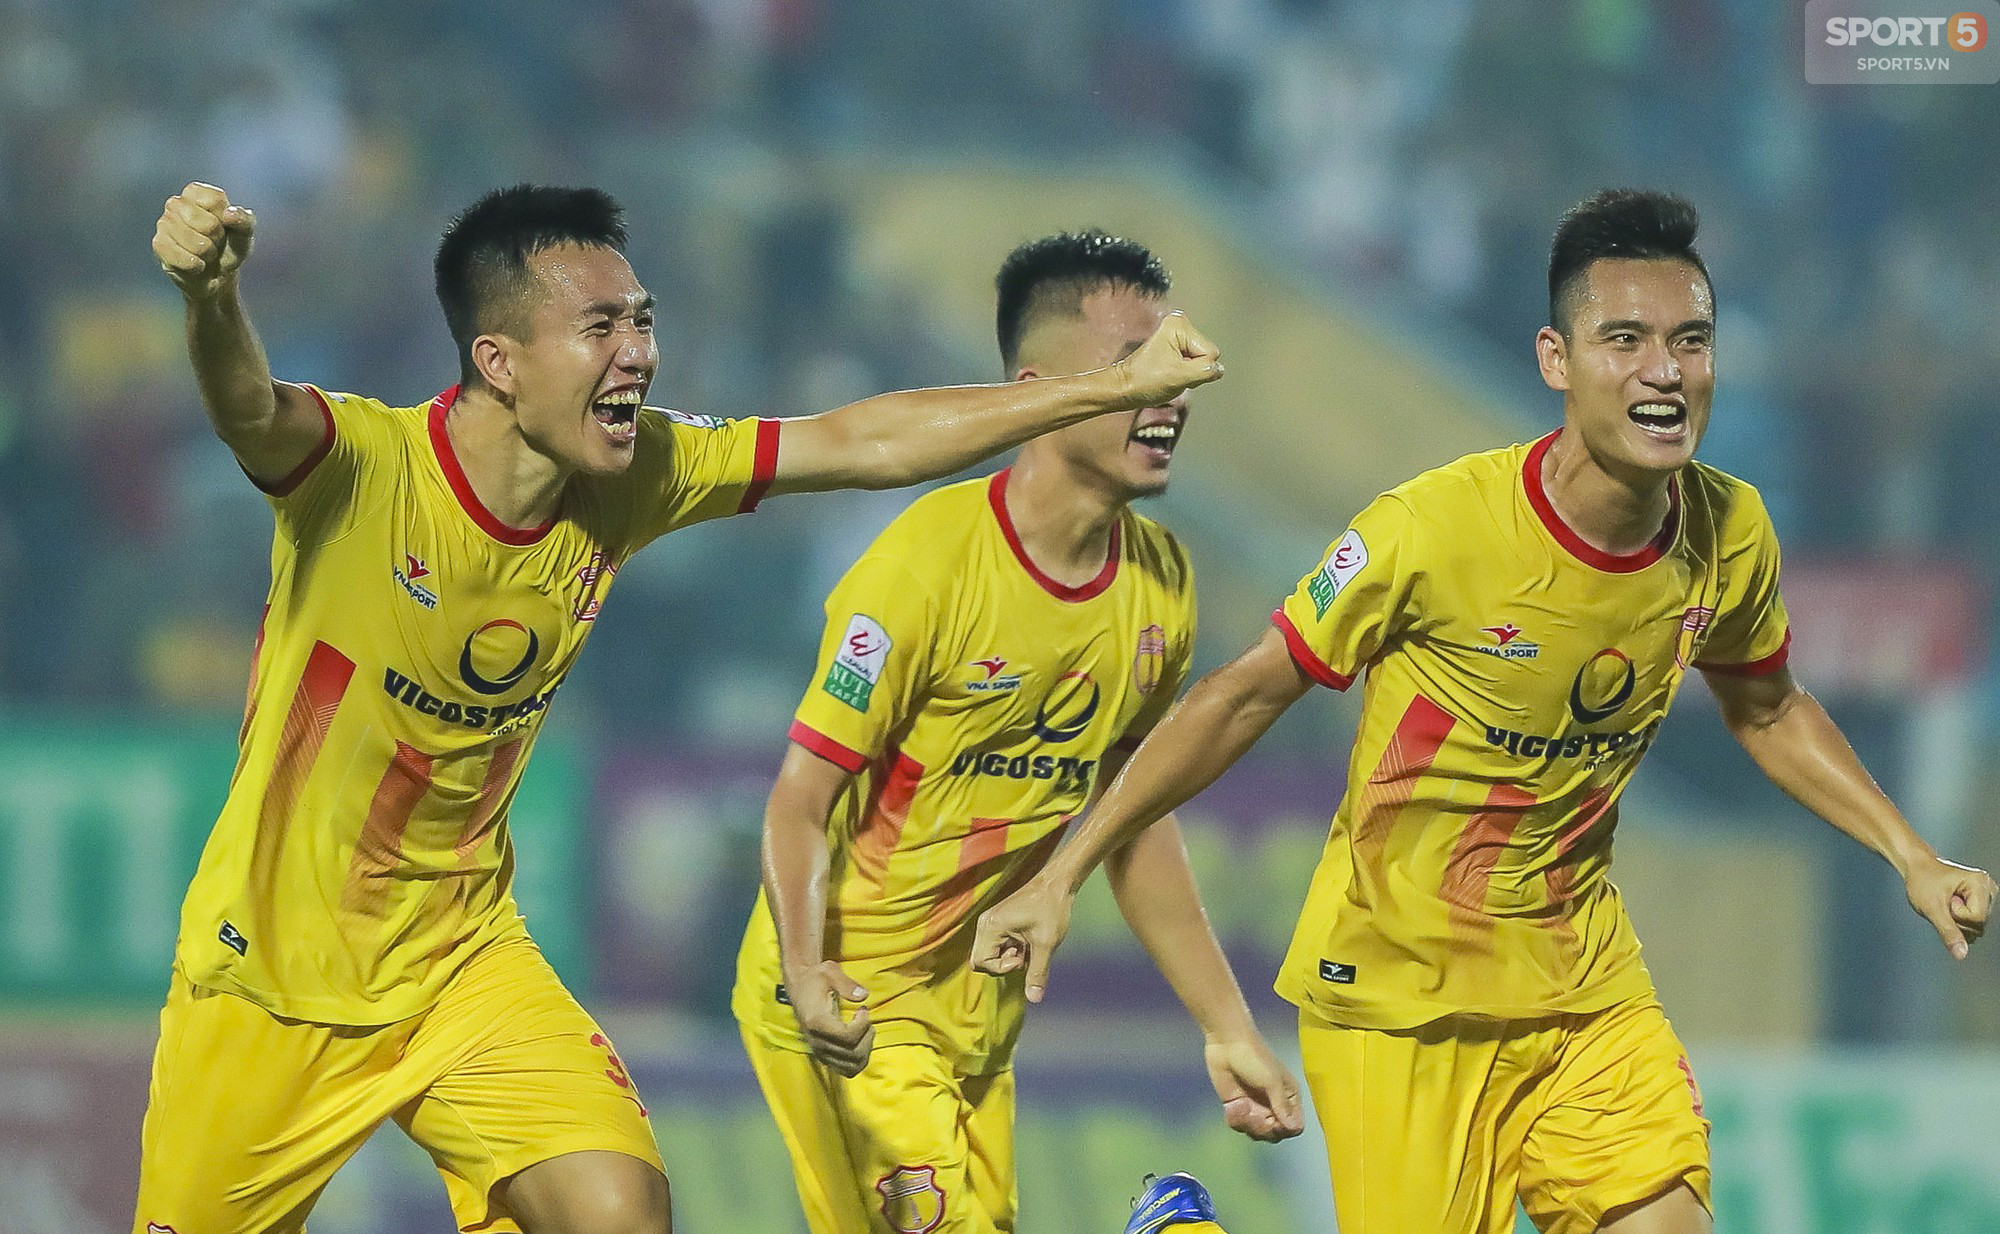 Cầu thủ Nam Định vỡ òa cảm xúc khi thắng trận đầu tiên ở Thiên Trường  - Ảnh 9.